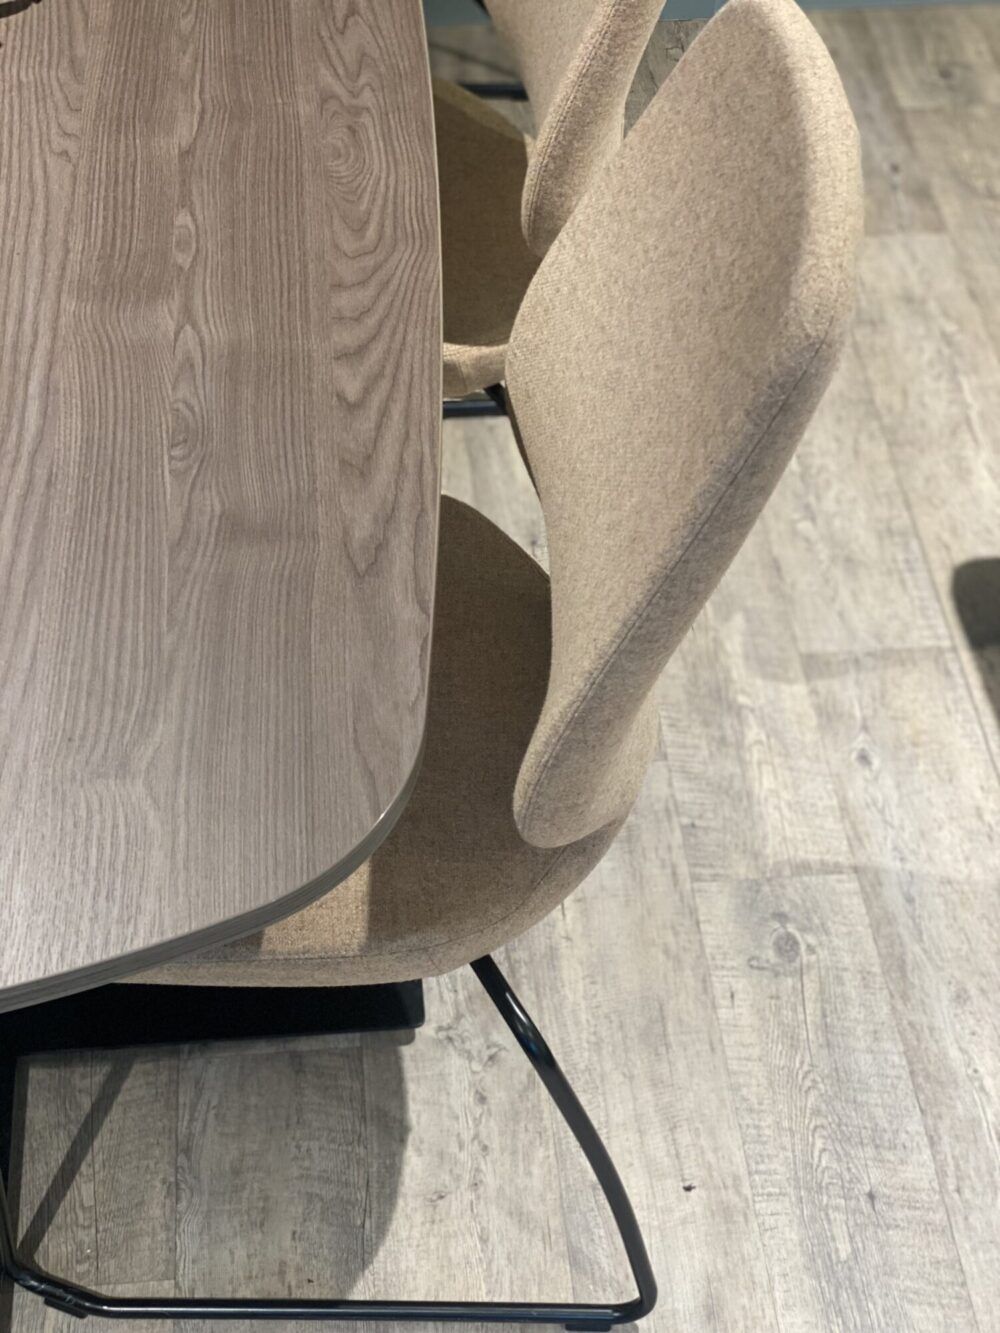 Møteromsbord og stoler på kontor hos Dampsaga Bad. Varig ullstoff i en beigetone og bord i laminat tre. Møbler levert av Saxvik.